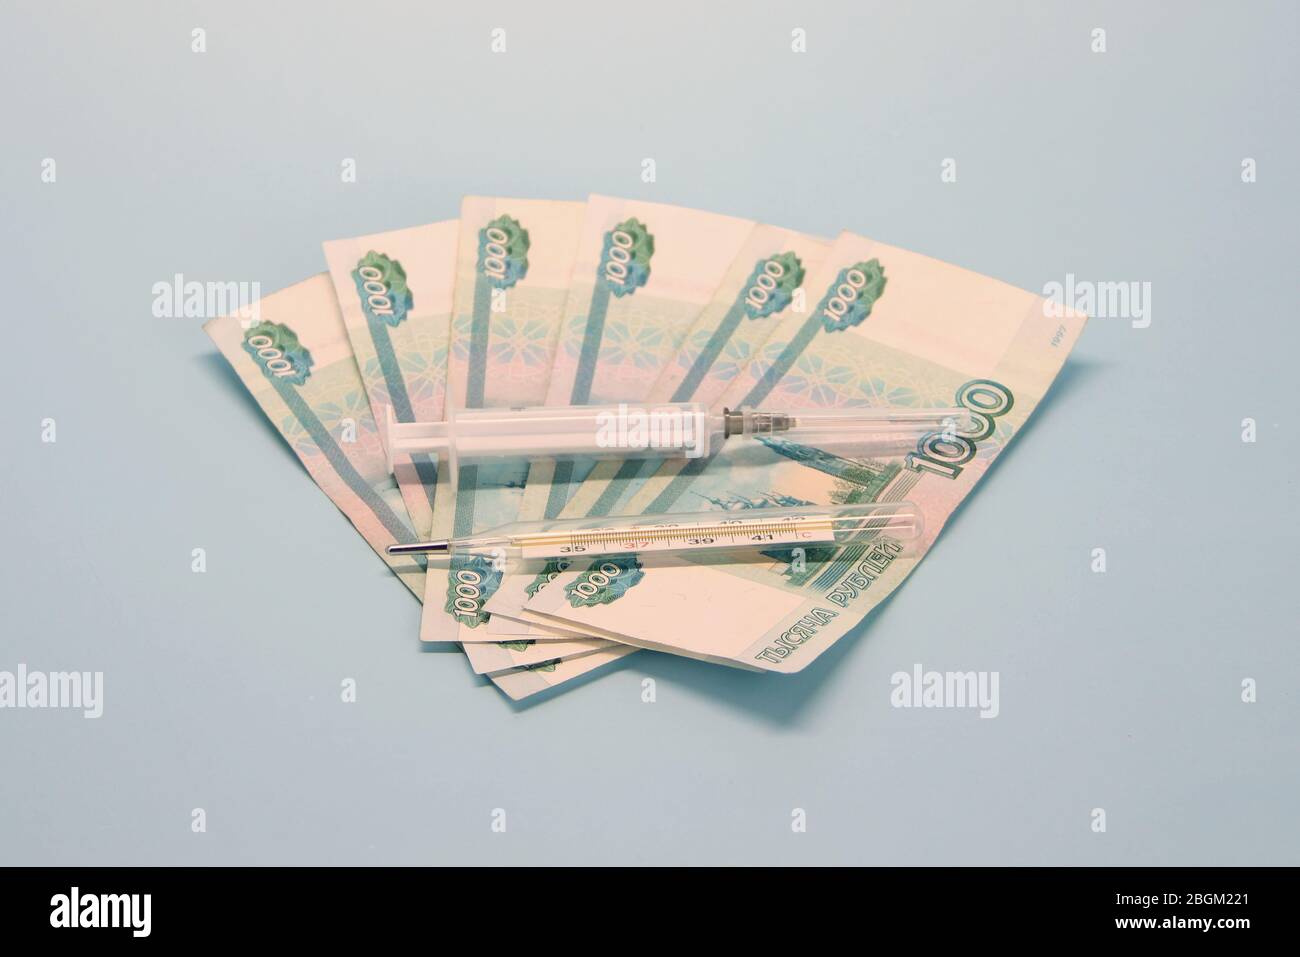 Billetes de papel moneda rusos de mil rublos denominados en un fan. La jeringa y el termómetro se encuentran en la parte superior. Foto de stock